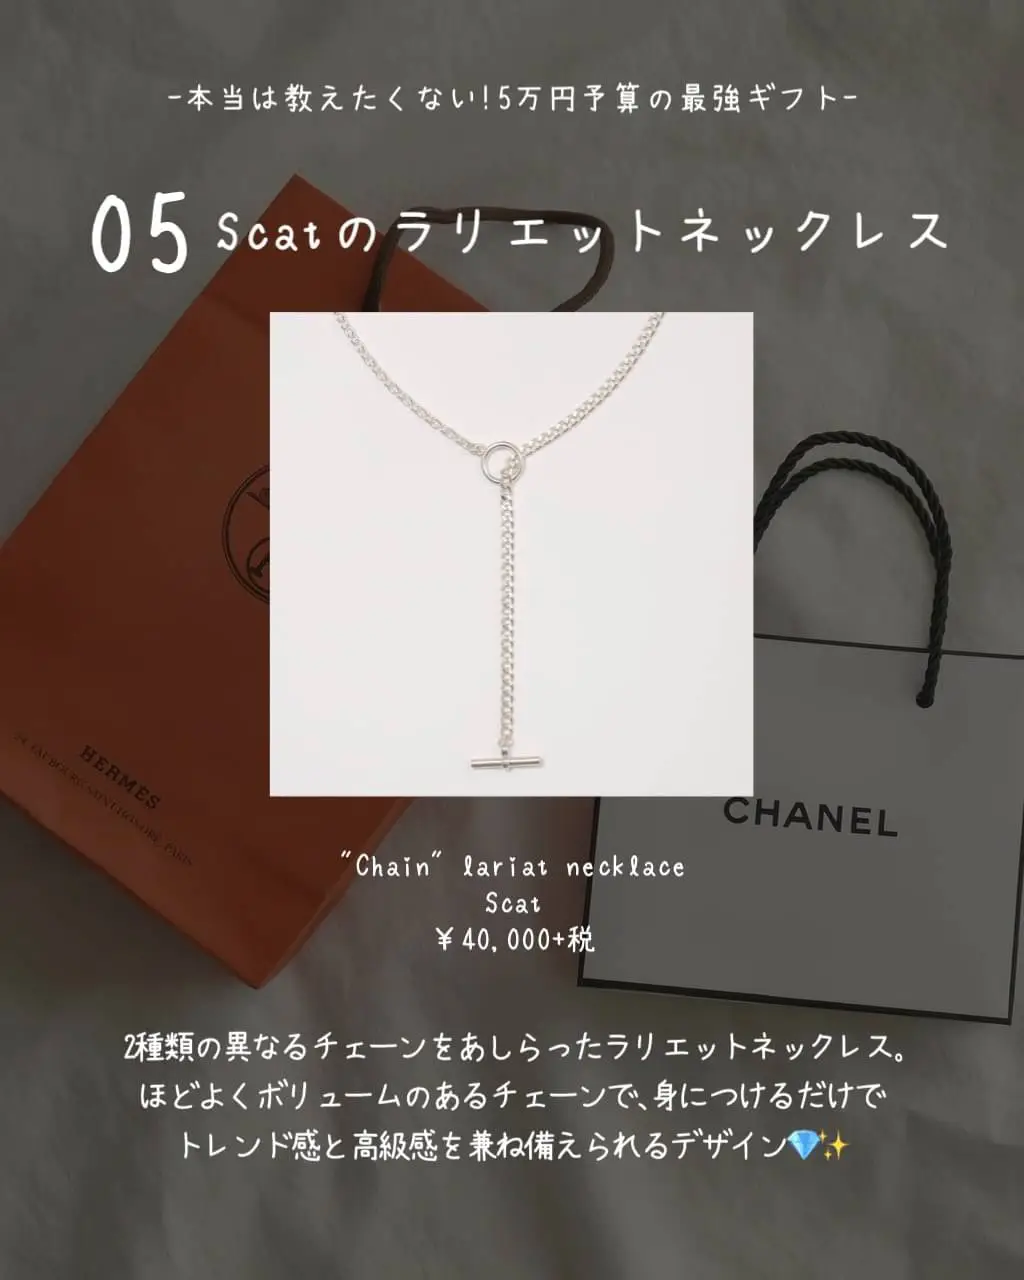 彼女 誕生日プレゼント 2万円_category_fashion - Lemon8検索